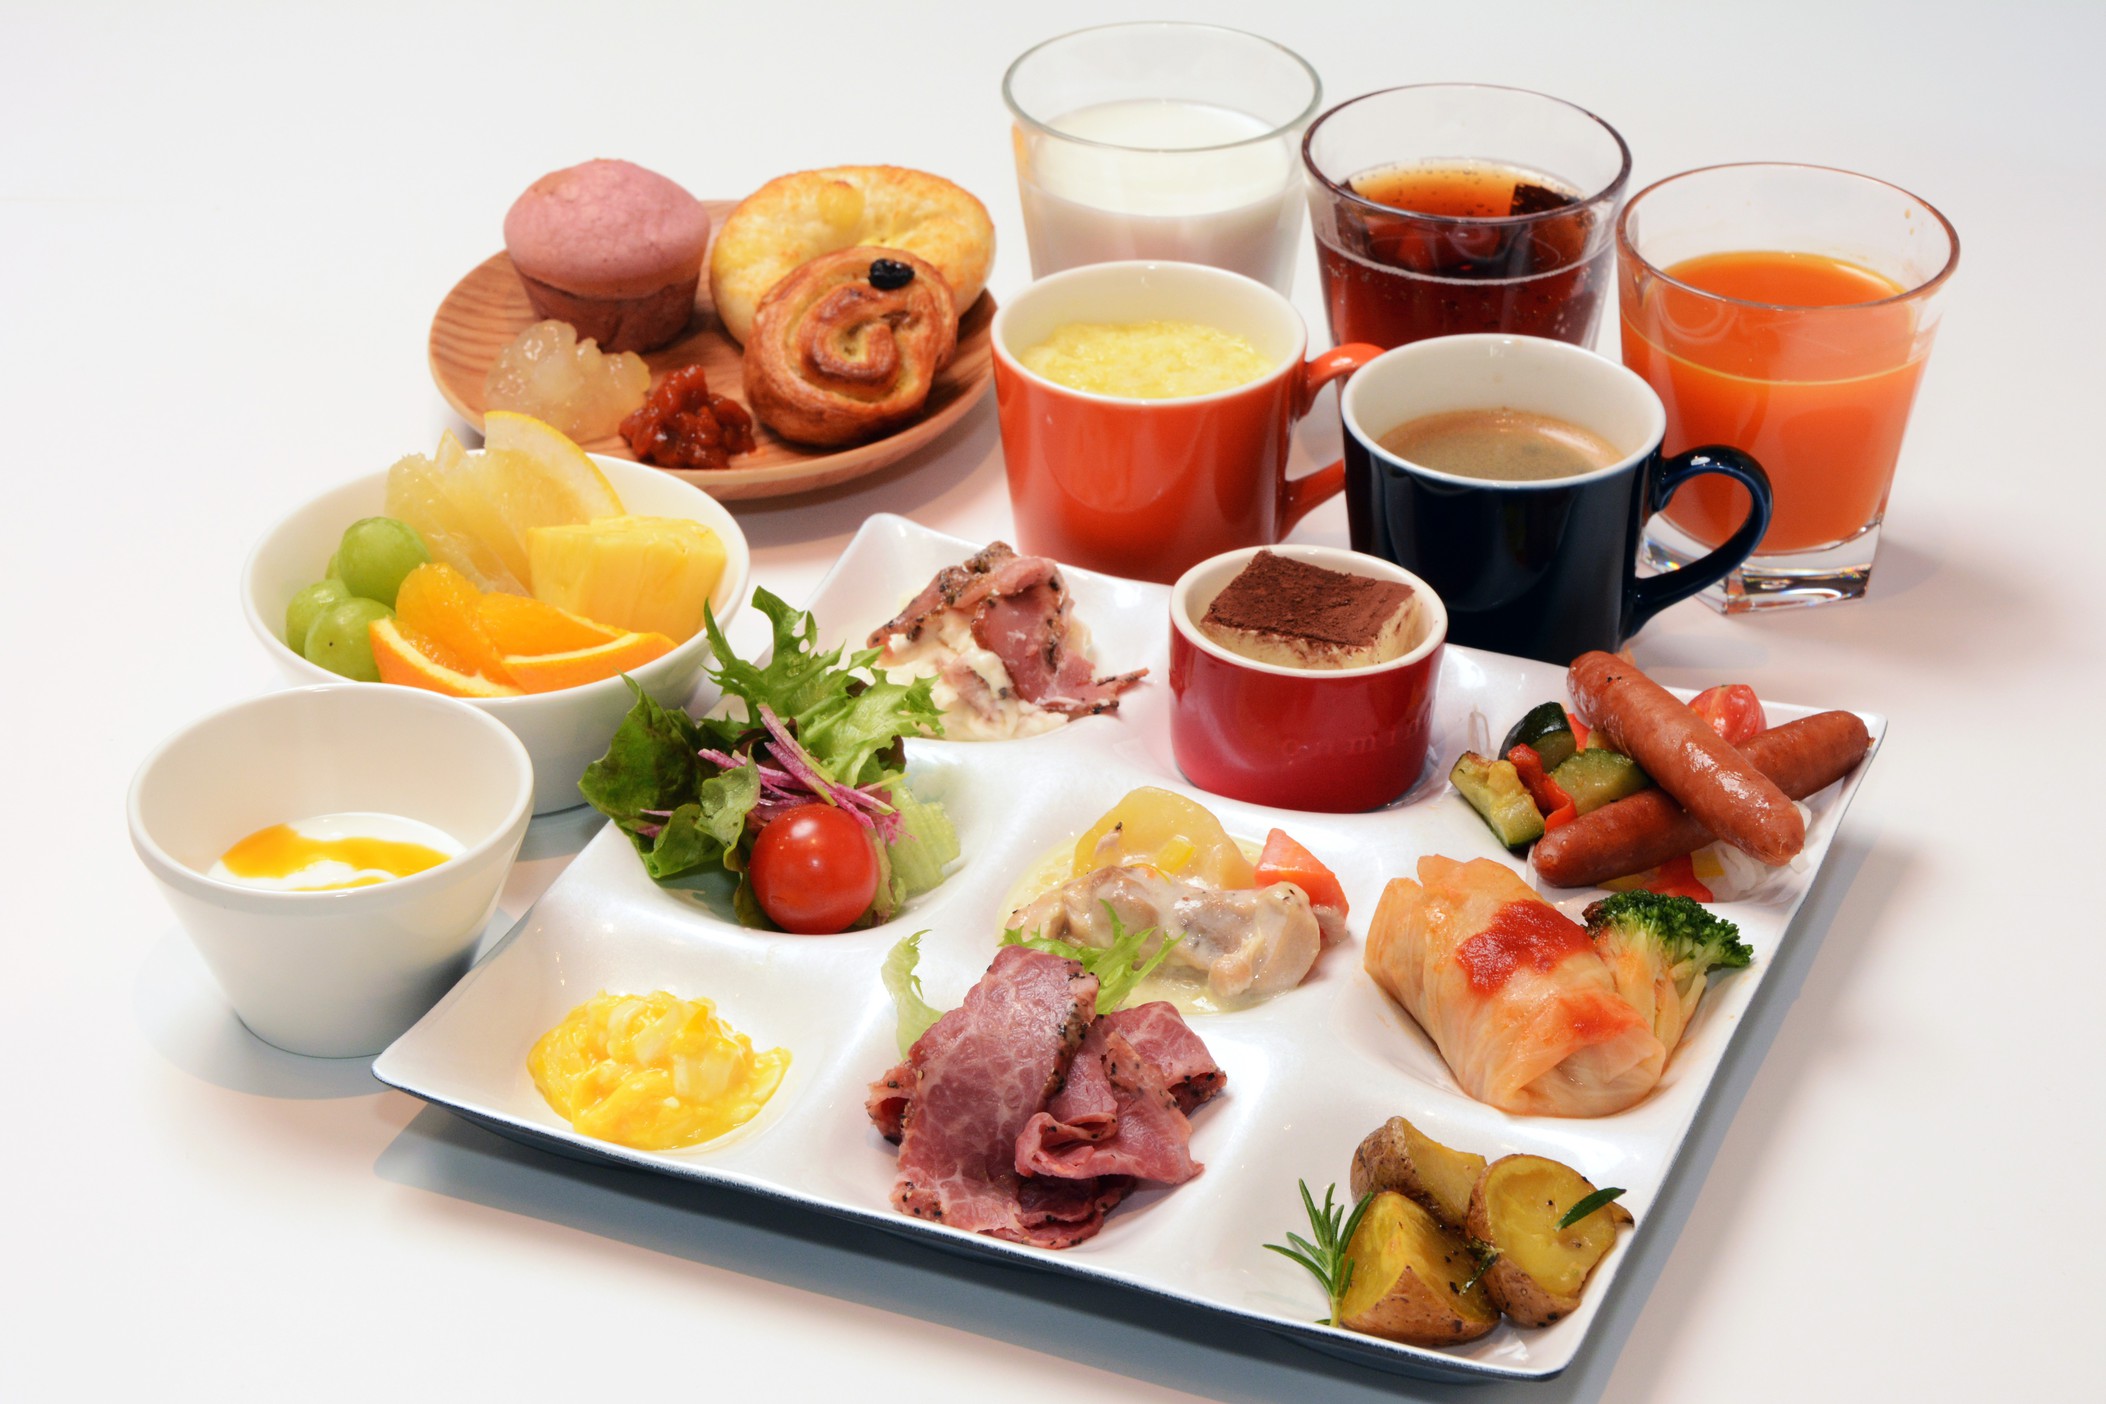 【朝食】厳選された和洋約60種類、「選ぶ楽しさ × 記憶に残る朝食 」をお楽しみください。